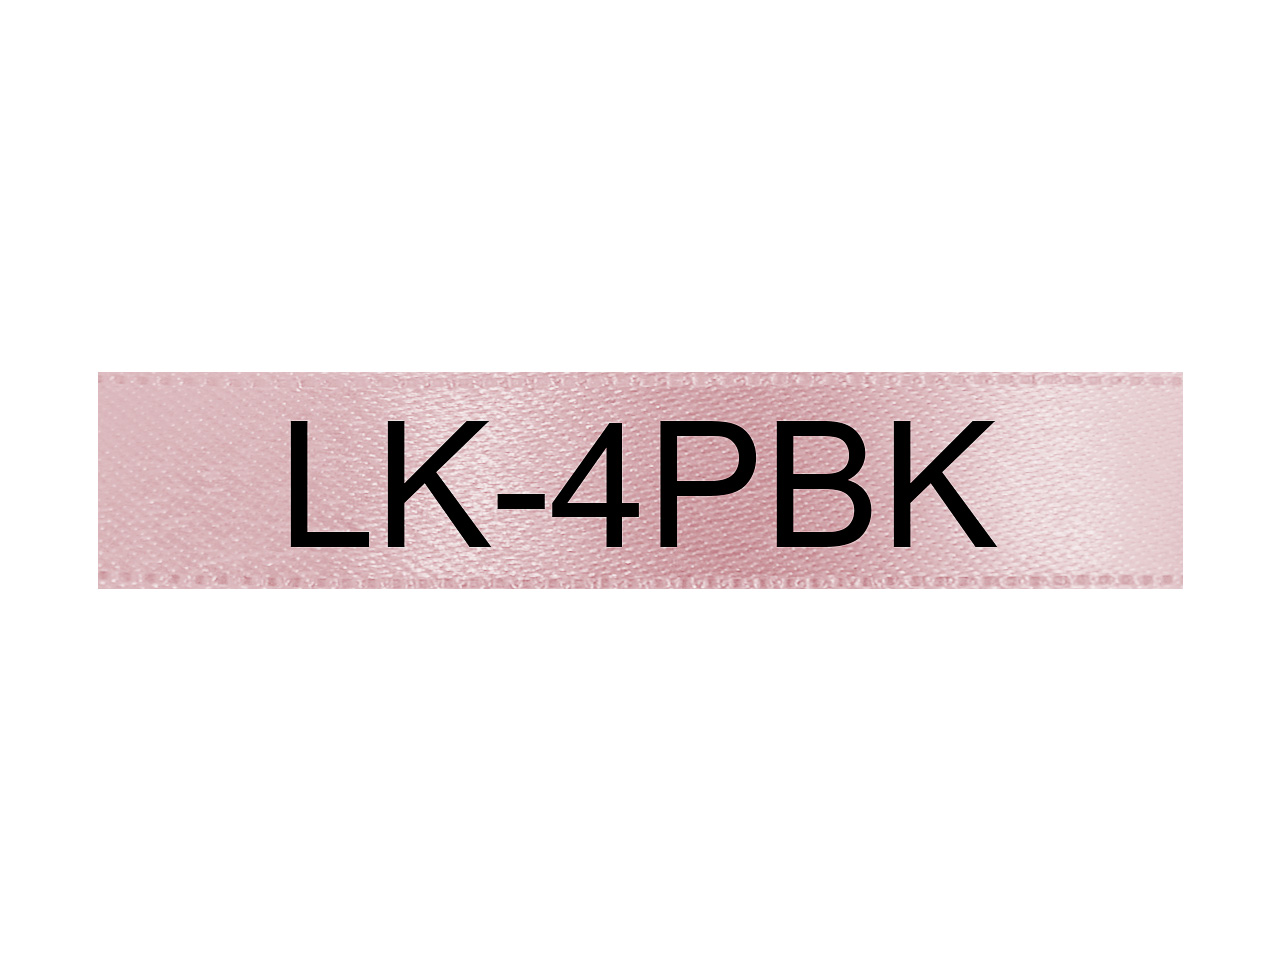 C53S654031 EPSON 12mm PINK SCHWARZ LK4PBK Schriftband 5m satin ribbon 1